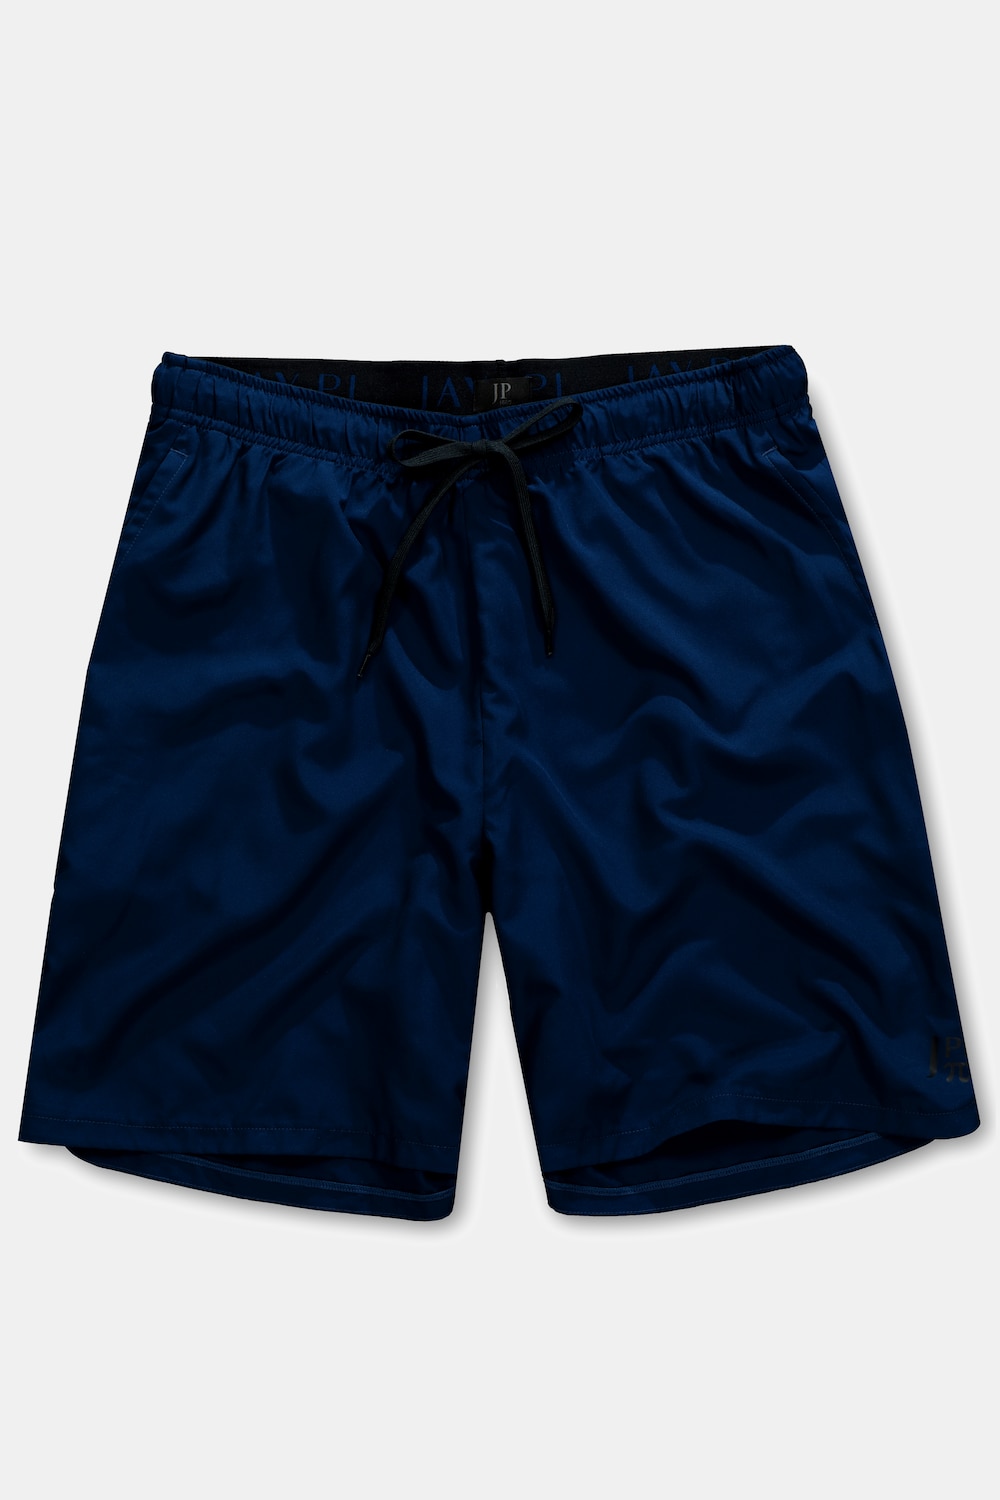 Sport-Shorts, Große Größen, Herren, blau, Größe: XL, Polyester, JP1880 product